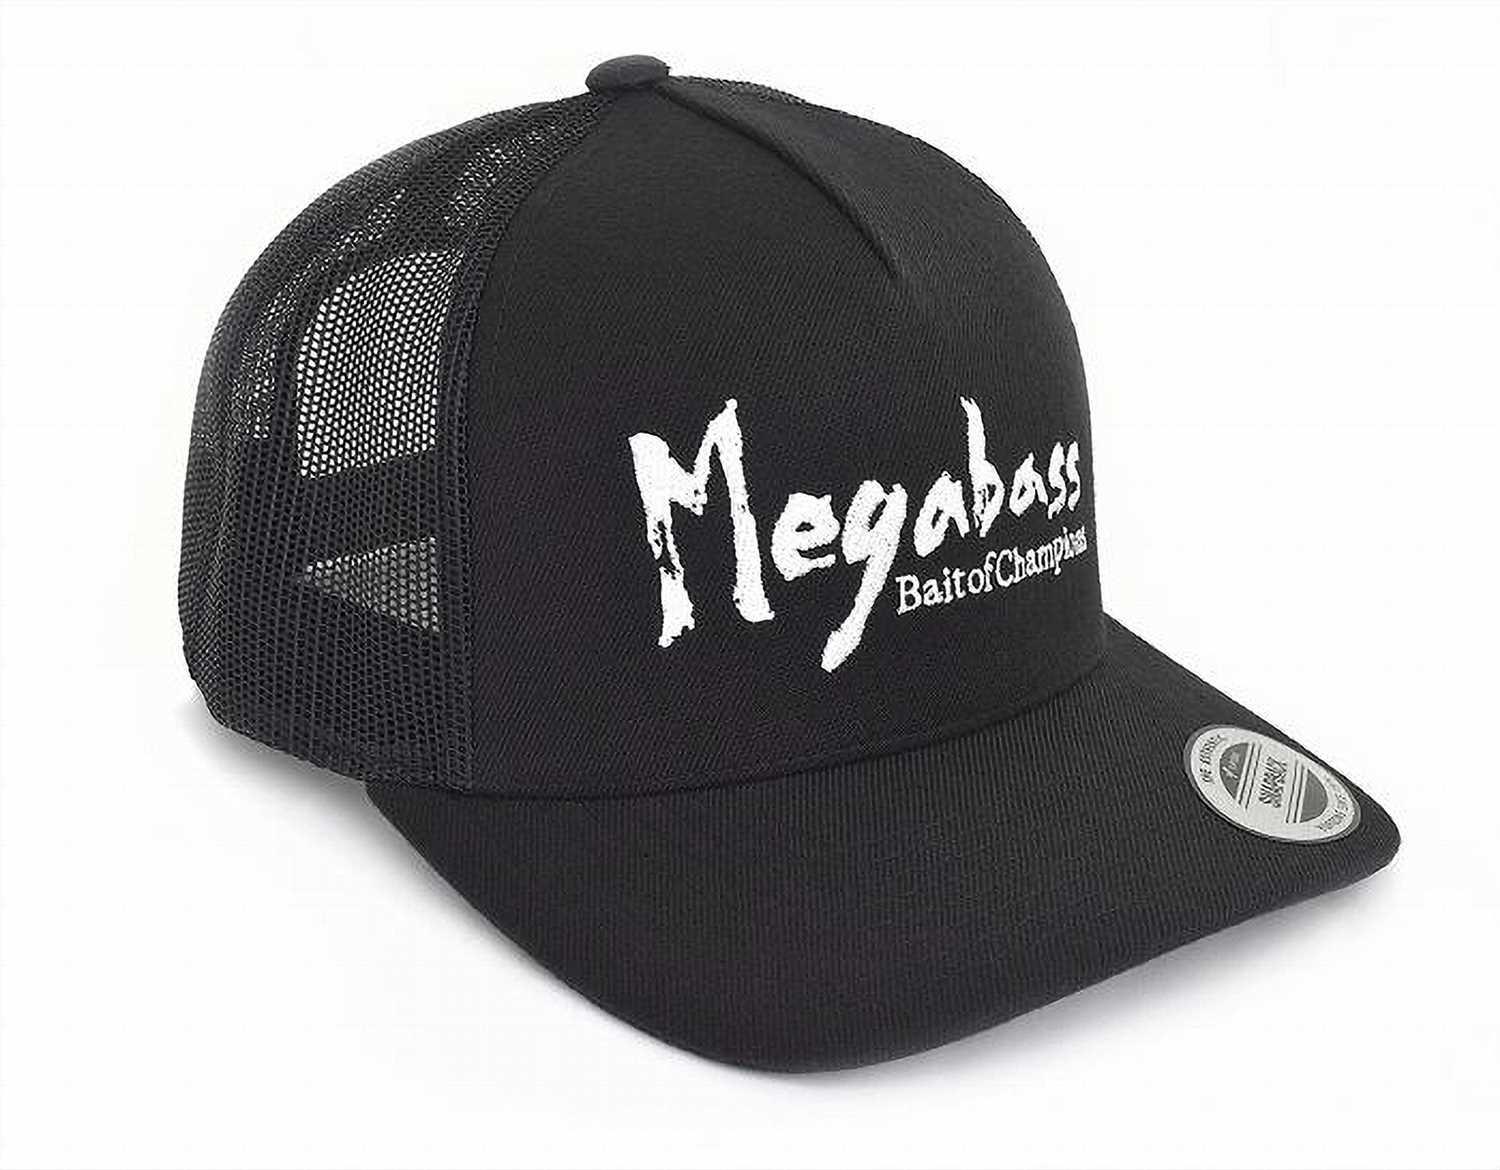 Megabass Brush Trucker Cap - Black/White